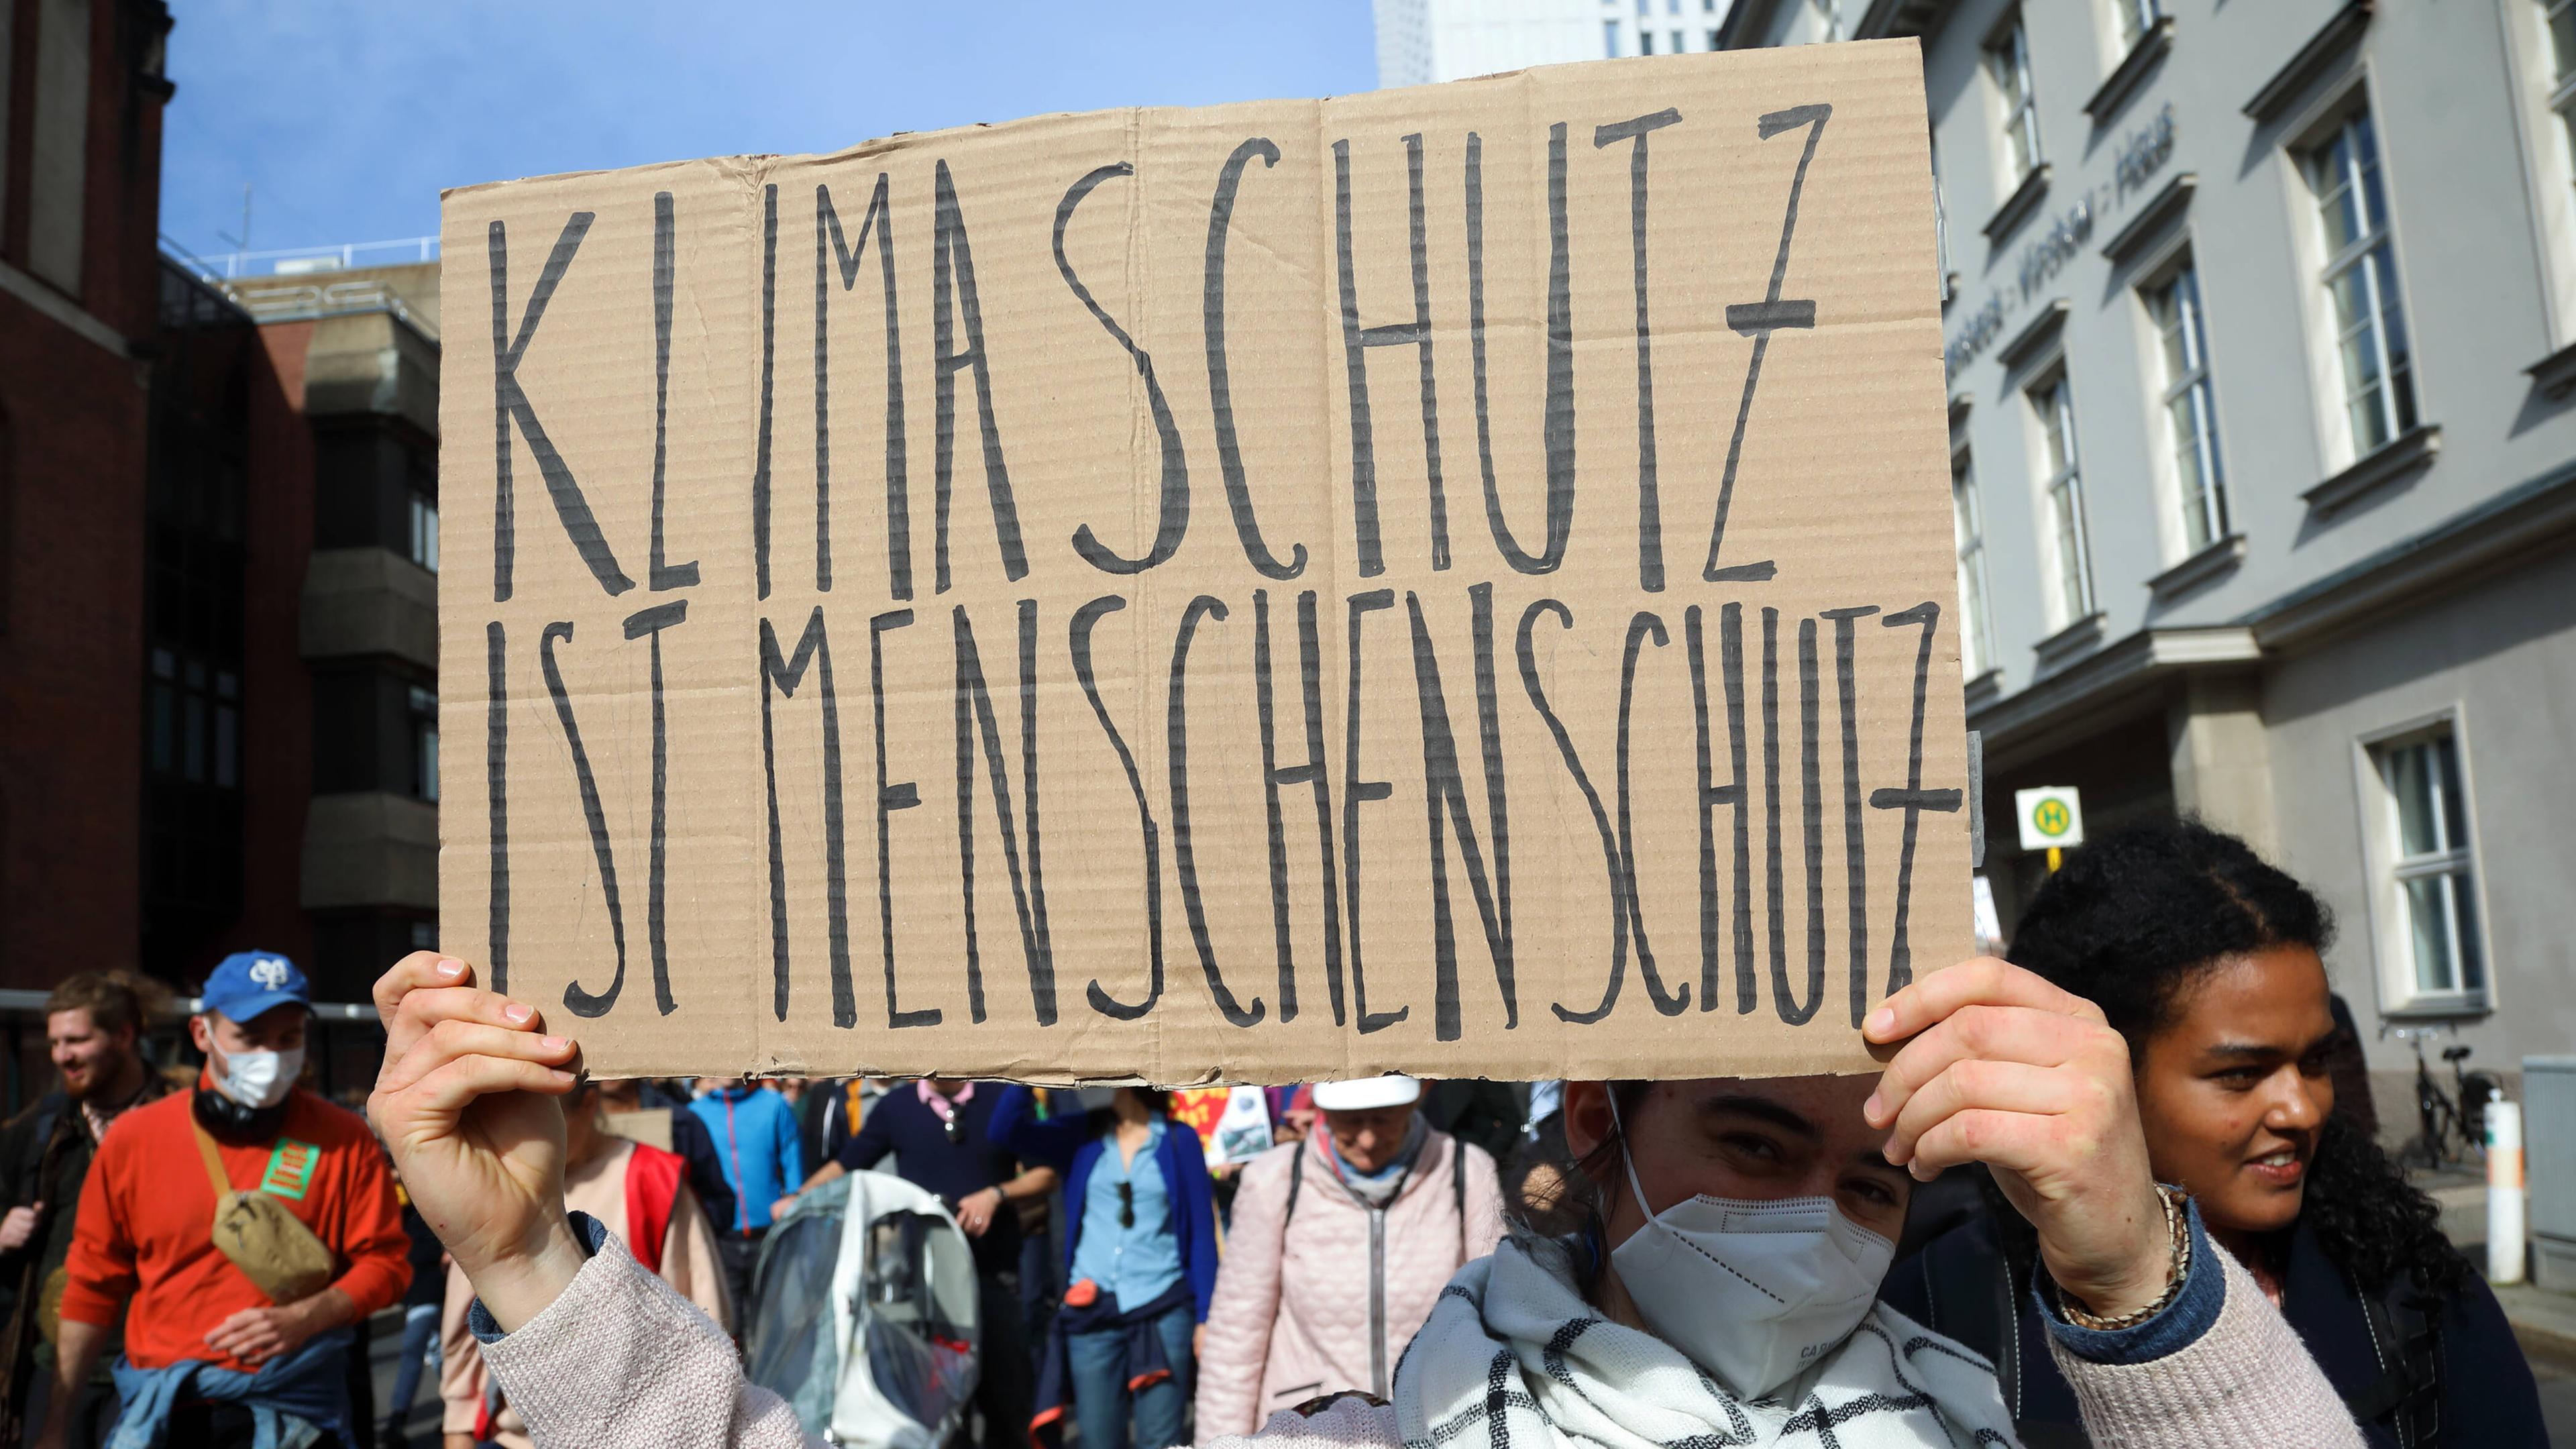 Demonstranten mit Schild mit Aufschrift "Klimaschutz ist Menschenschutz"